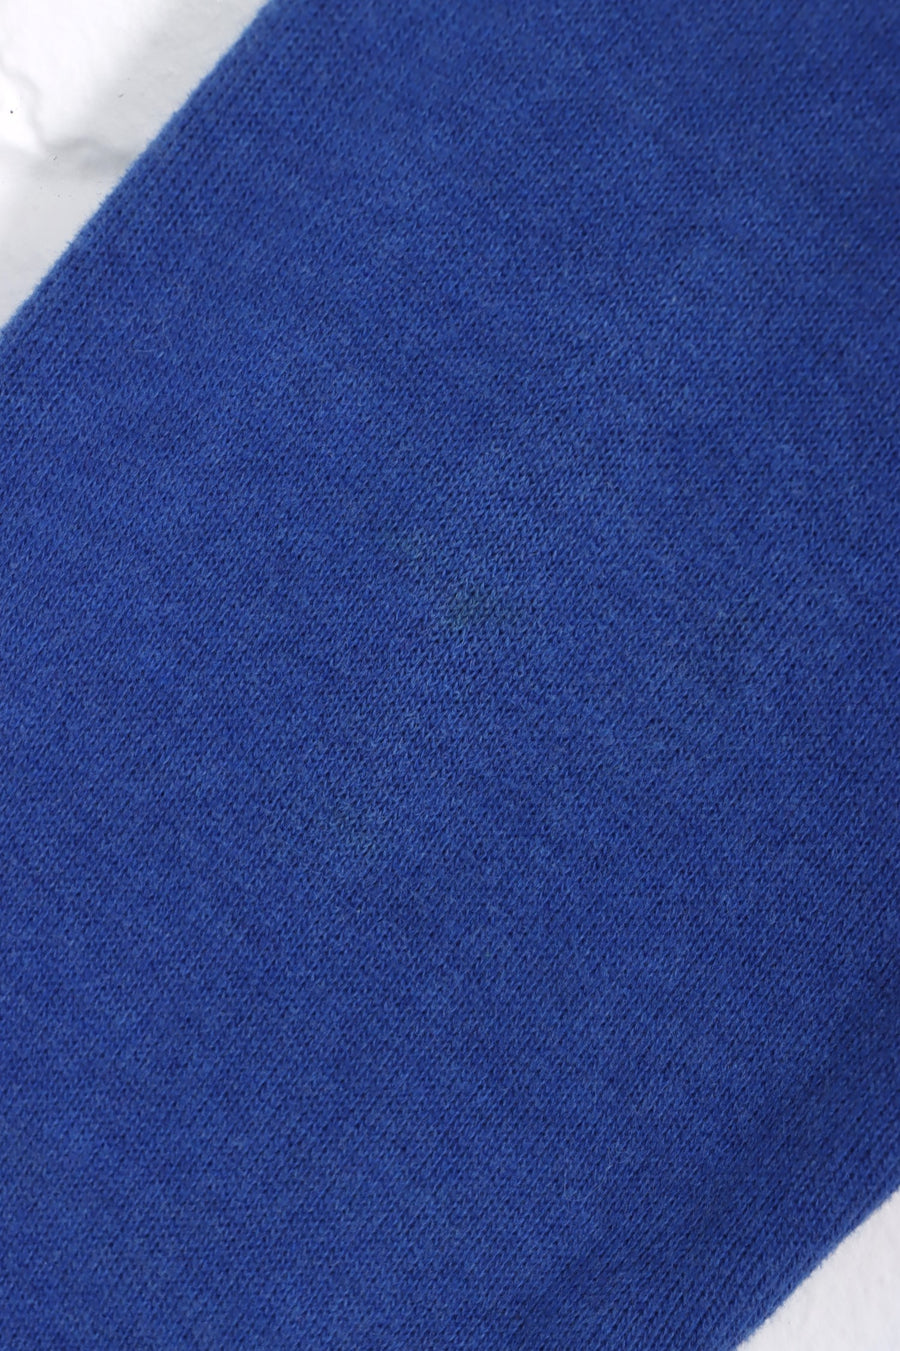 RALPH LAUREN POLO Blue 1/4 Zip Knit Sweater (L)